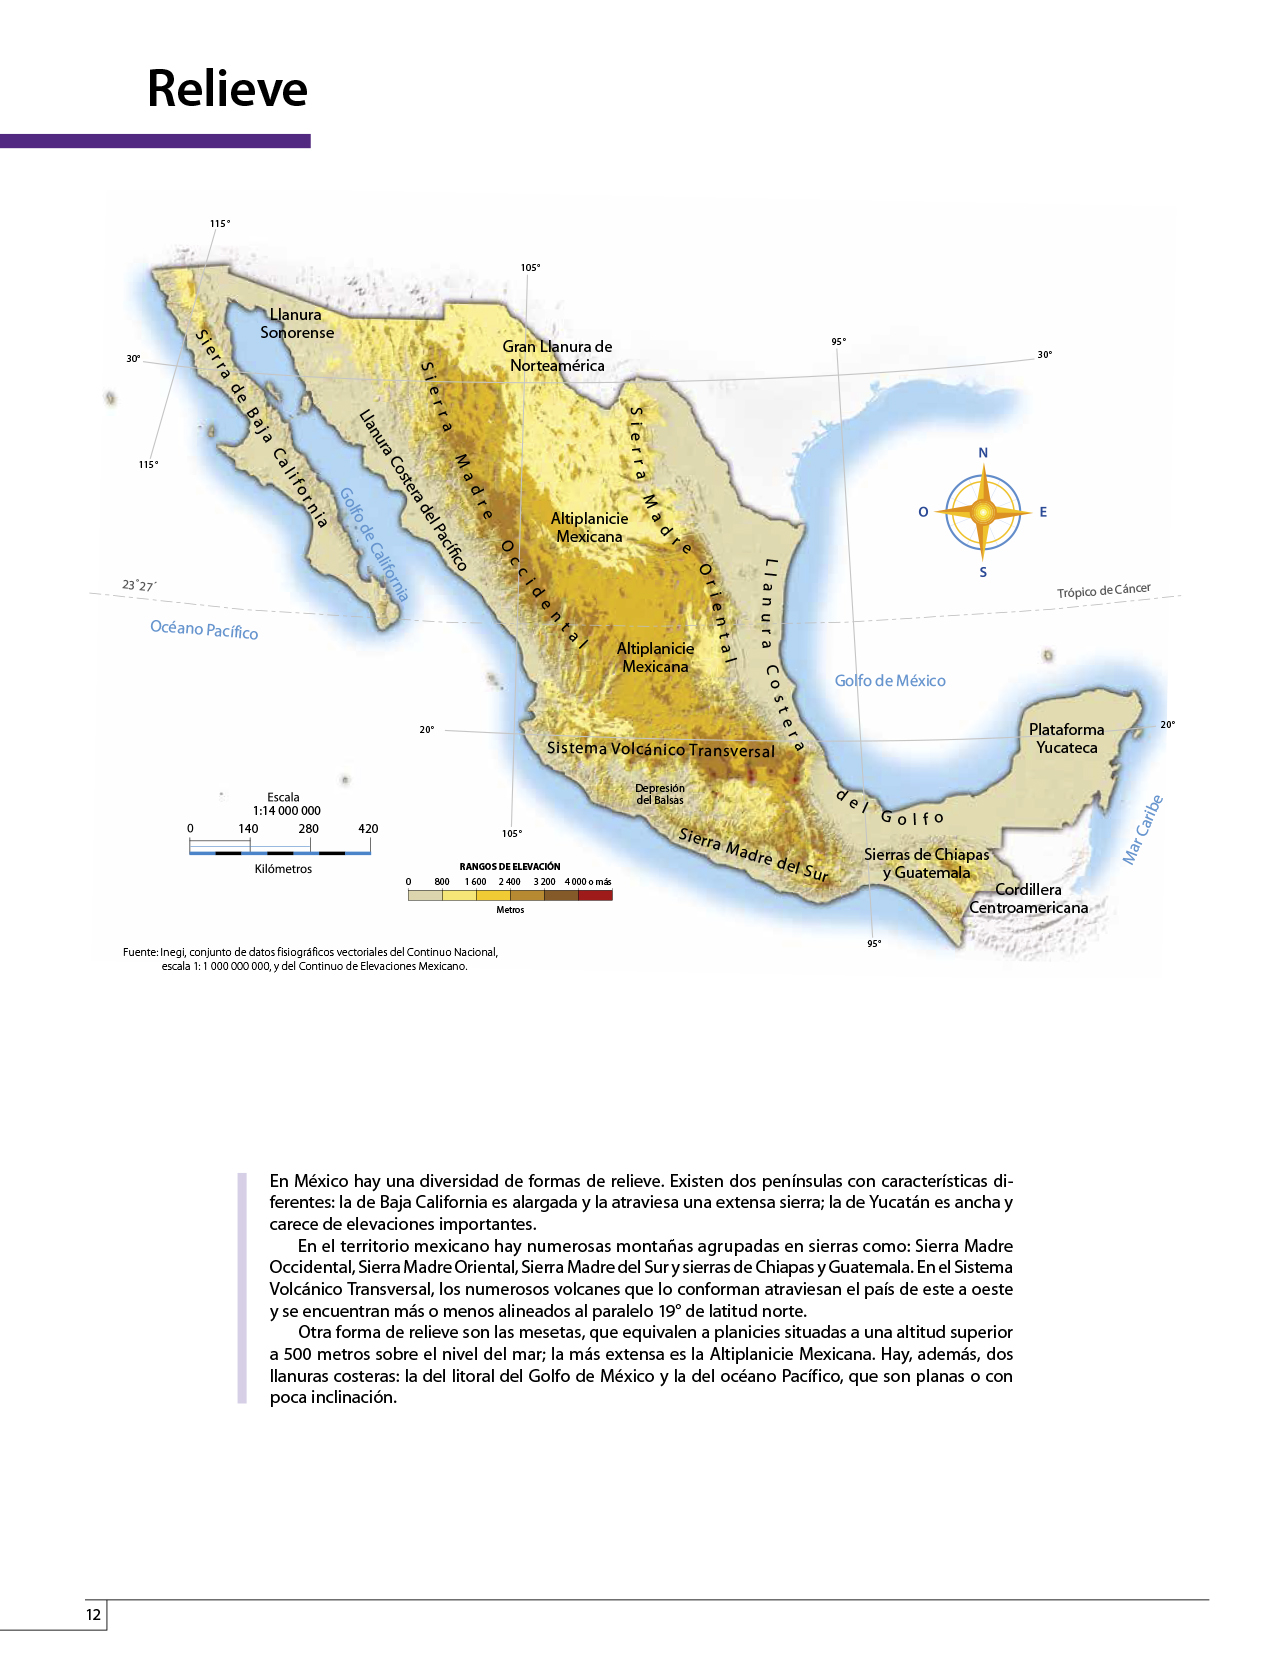 Atlas de México cuarto grado 2017-2018 - Página 12 ...